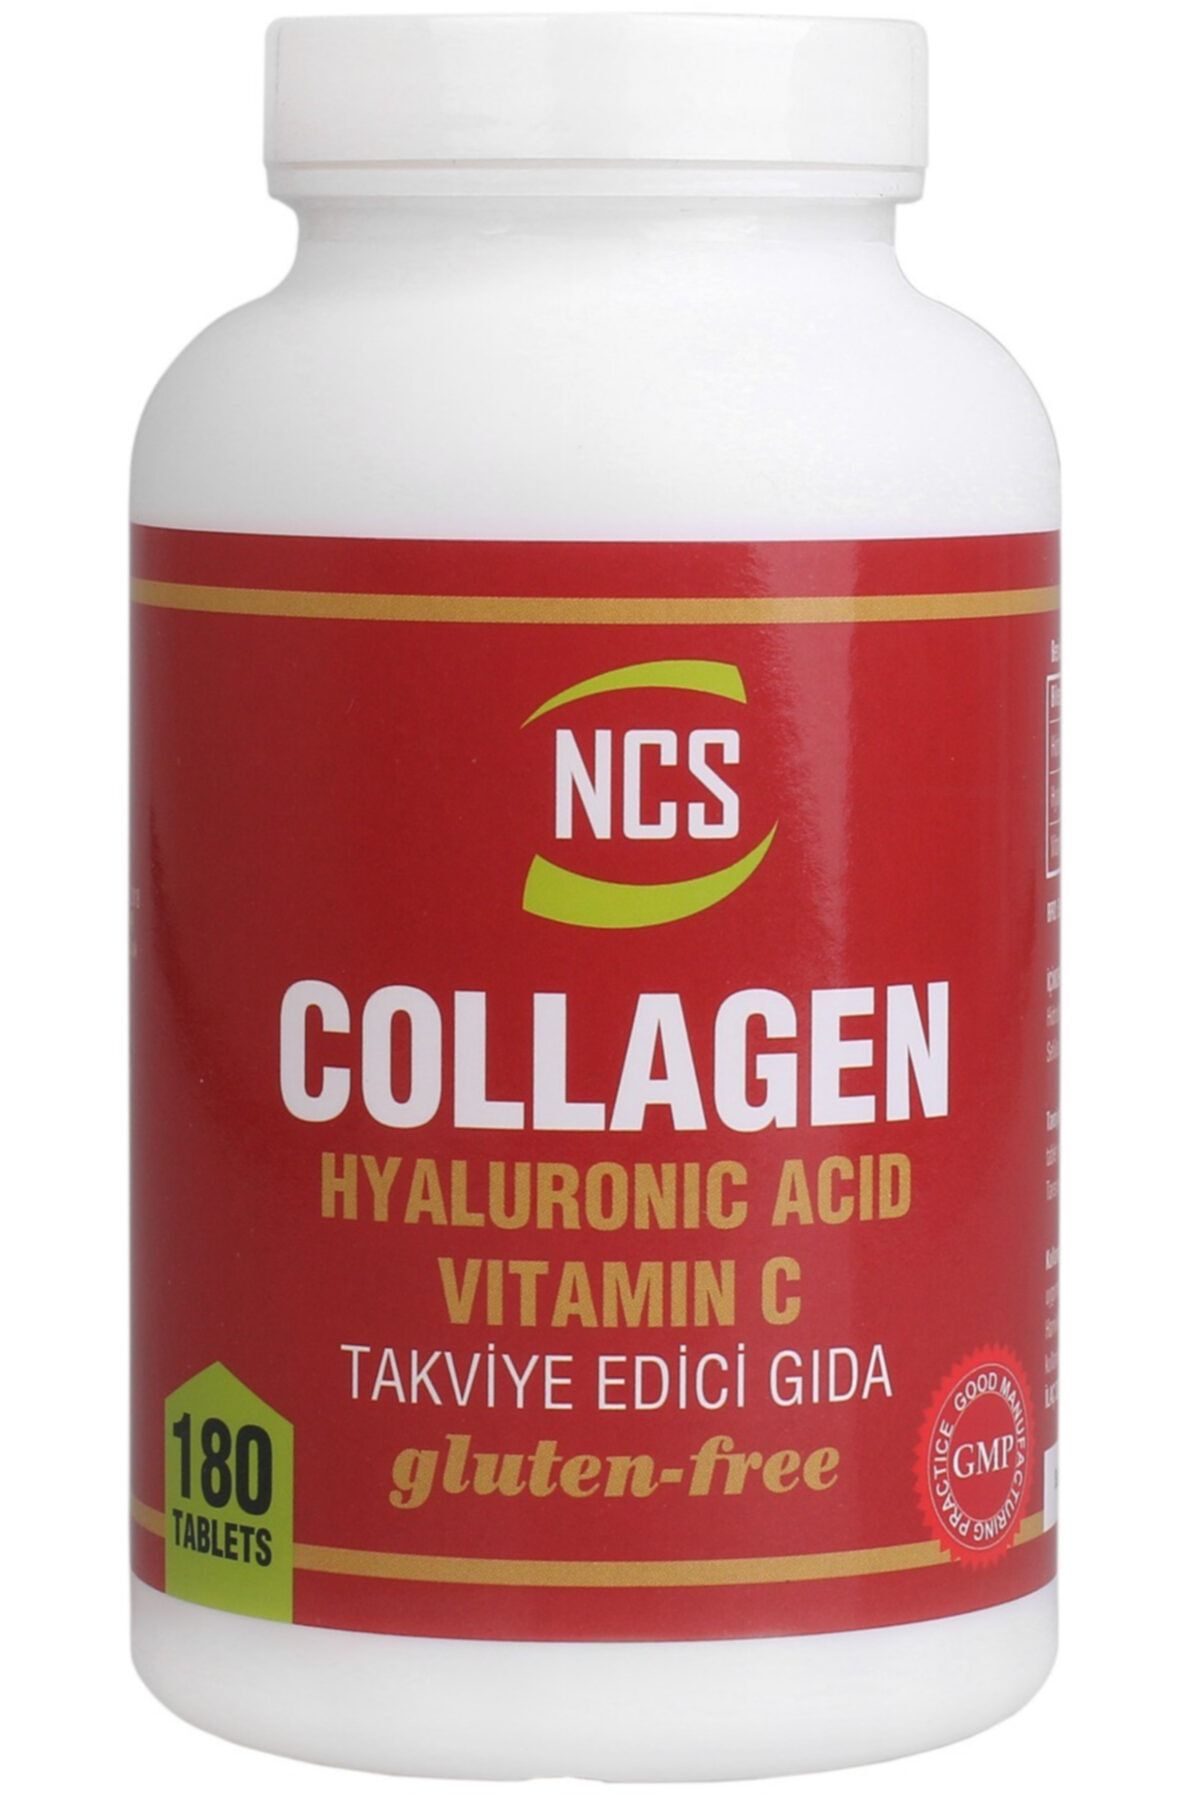 Nevfix Ncs Kolajen Hyaluronic Acid Vitamin C 180 Tablet Collagen 1000 Mg